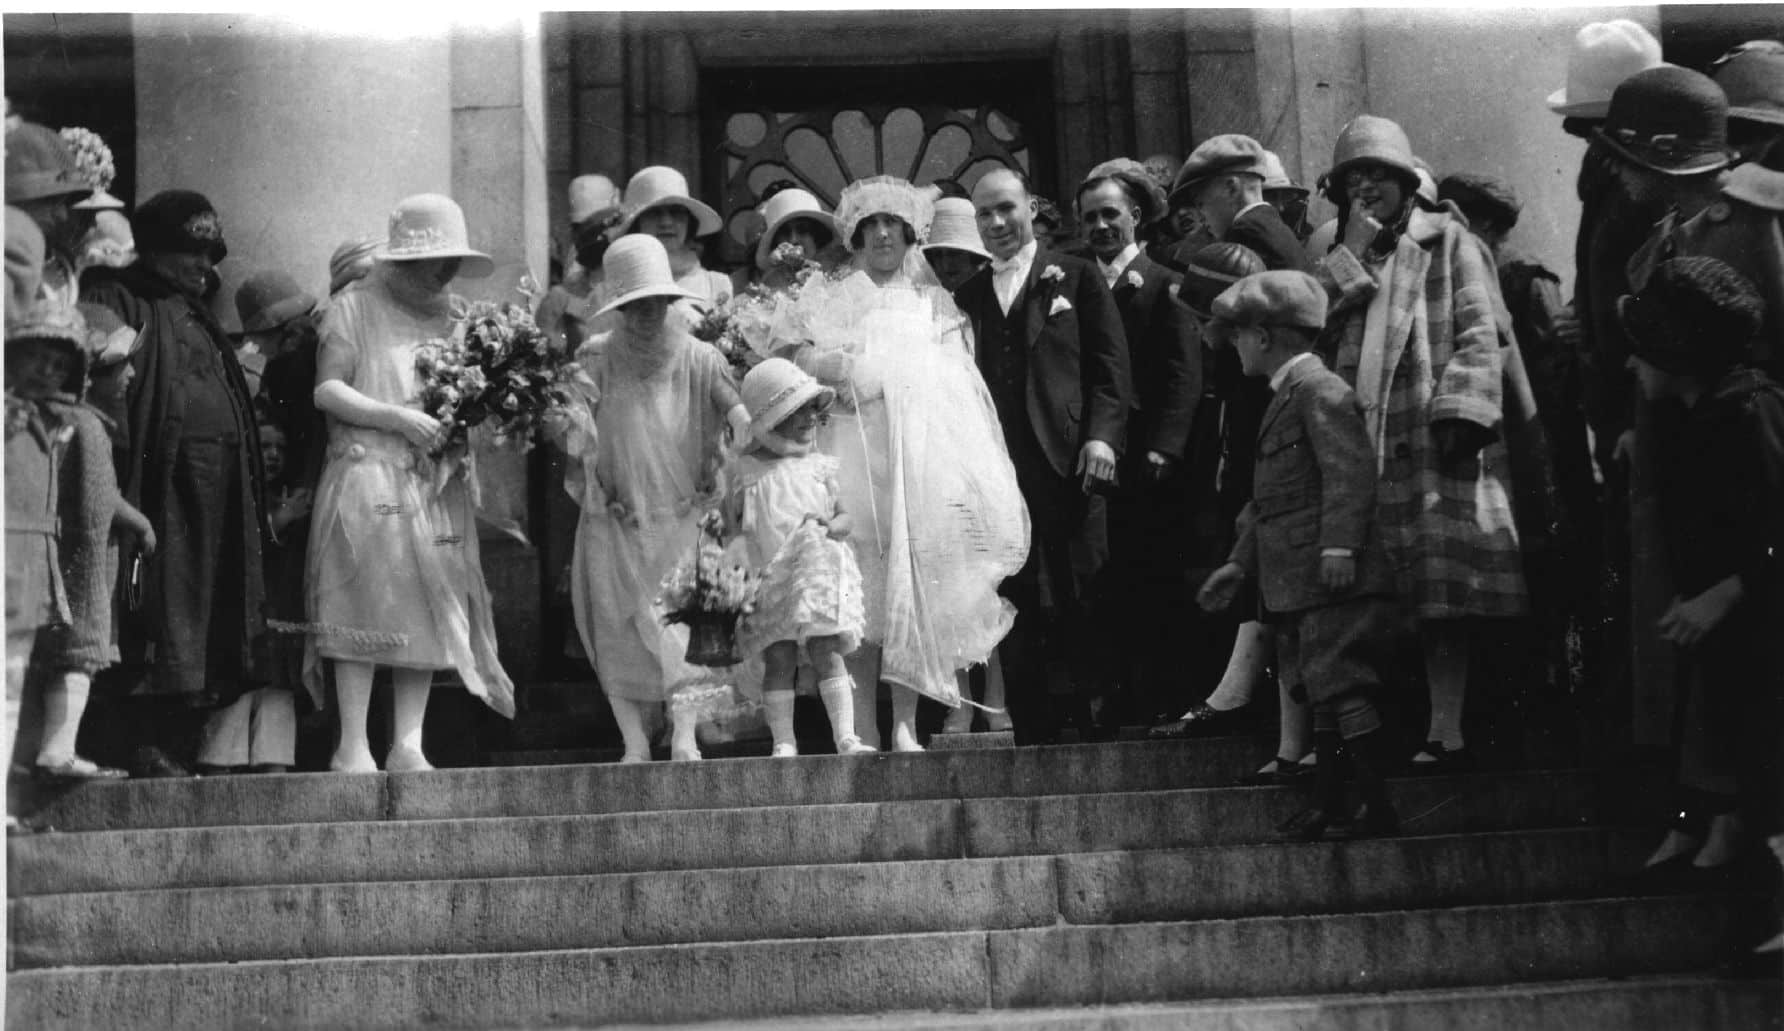 DeLisi Wedding, 1925